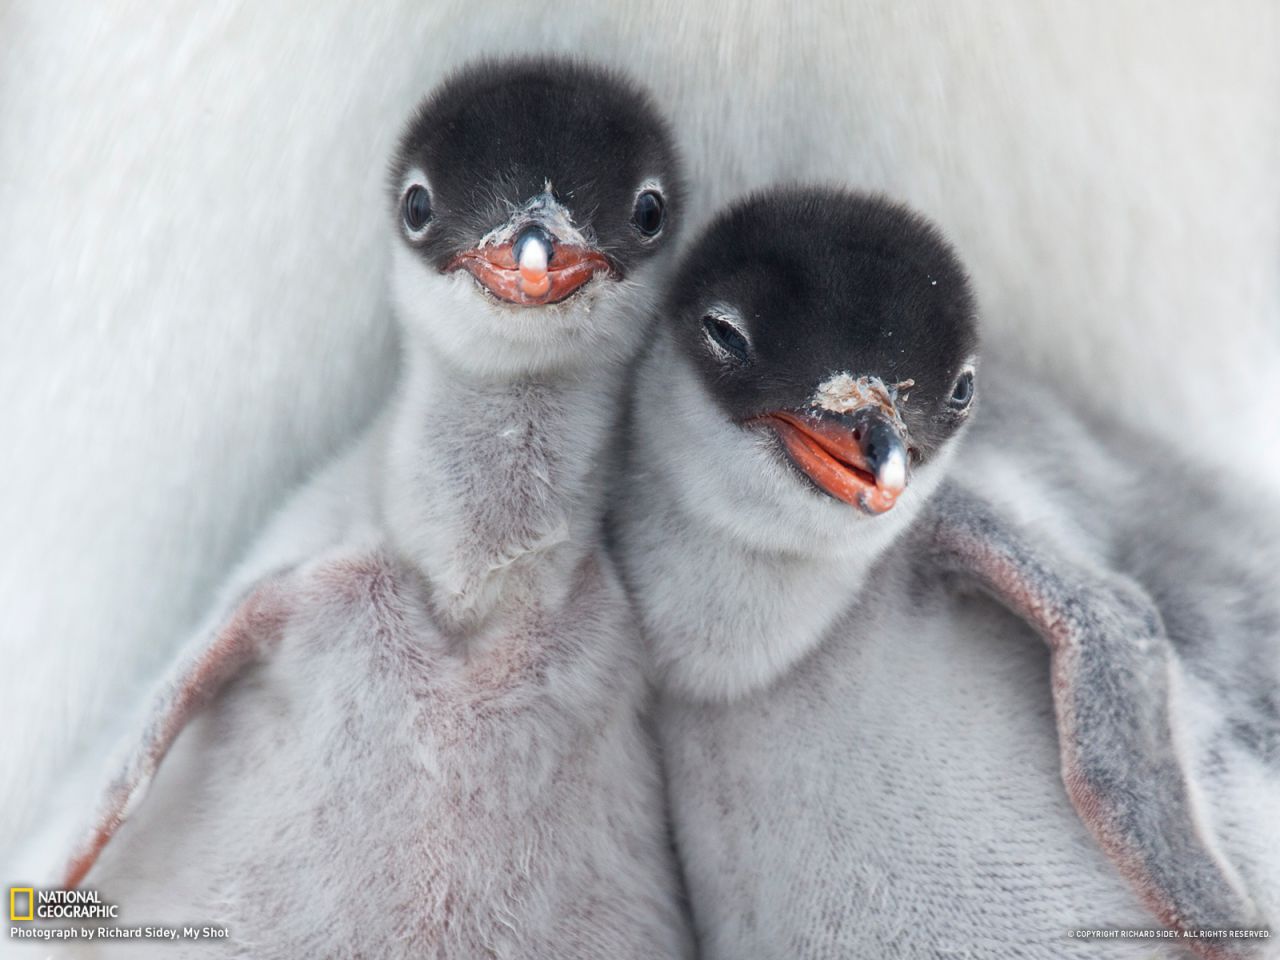 Братья пингвины